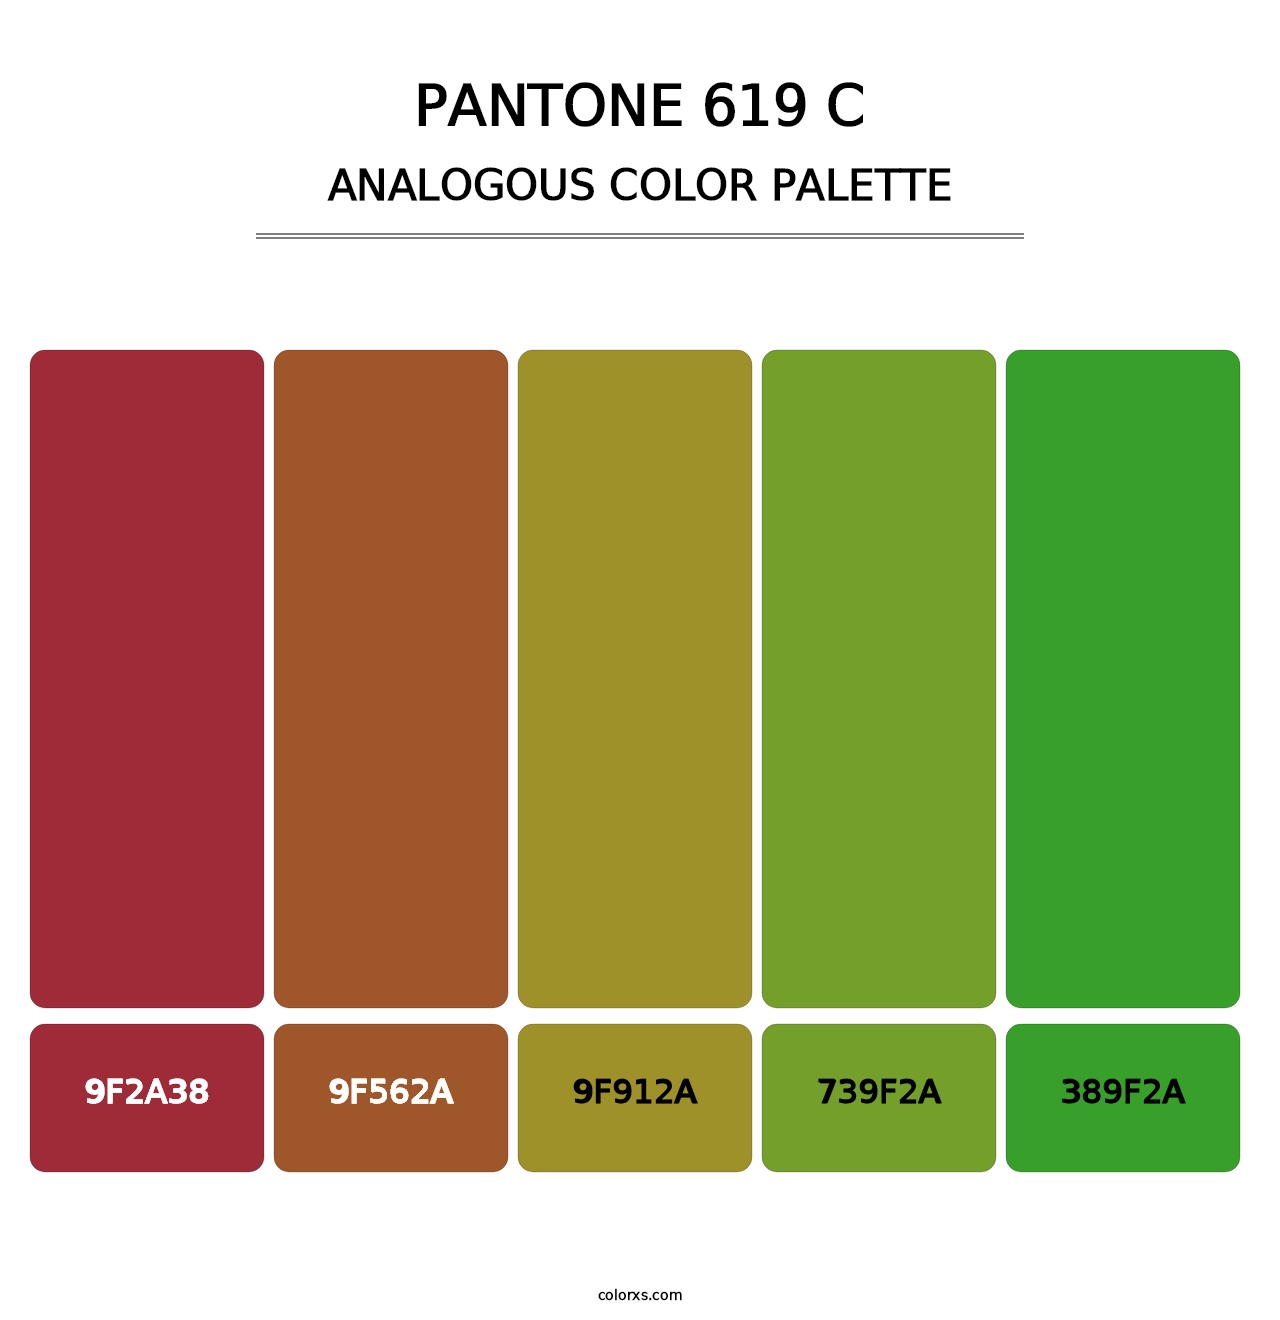 PANTONE 619 C - Analogous Color Palette